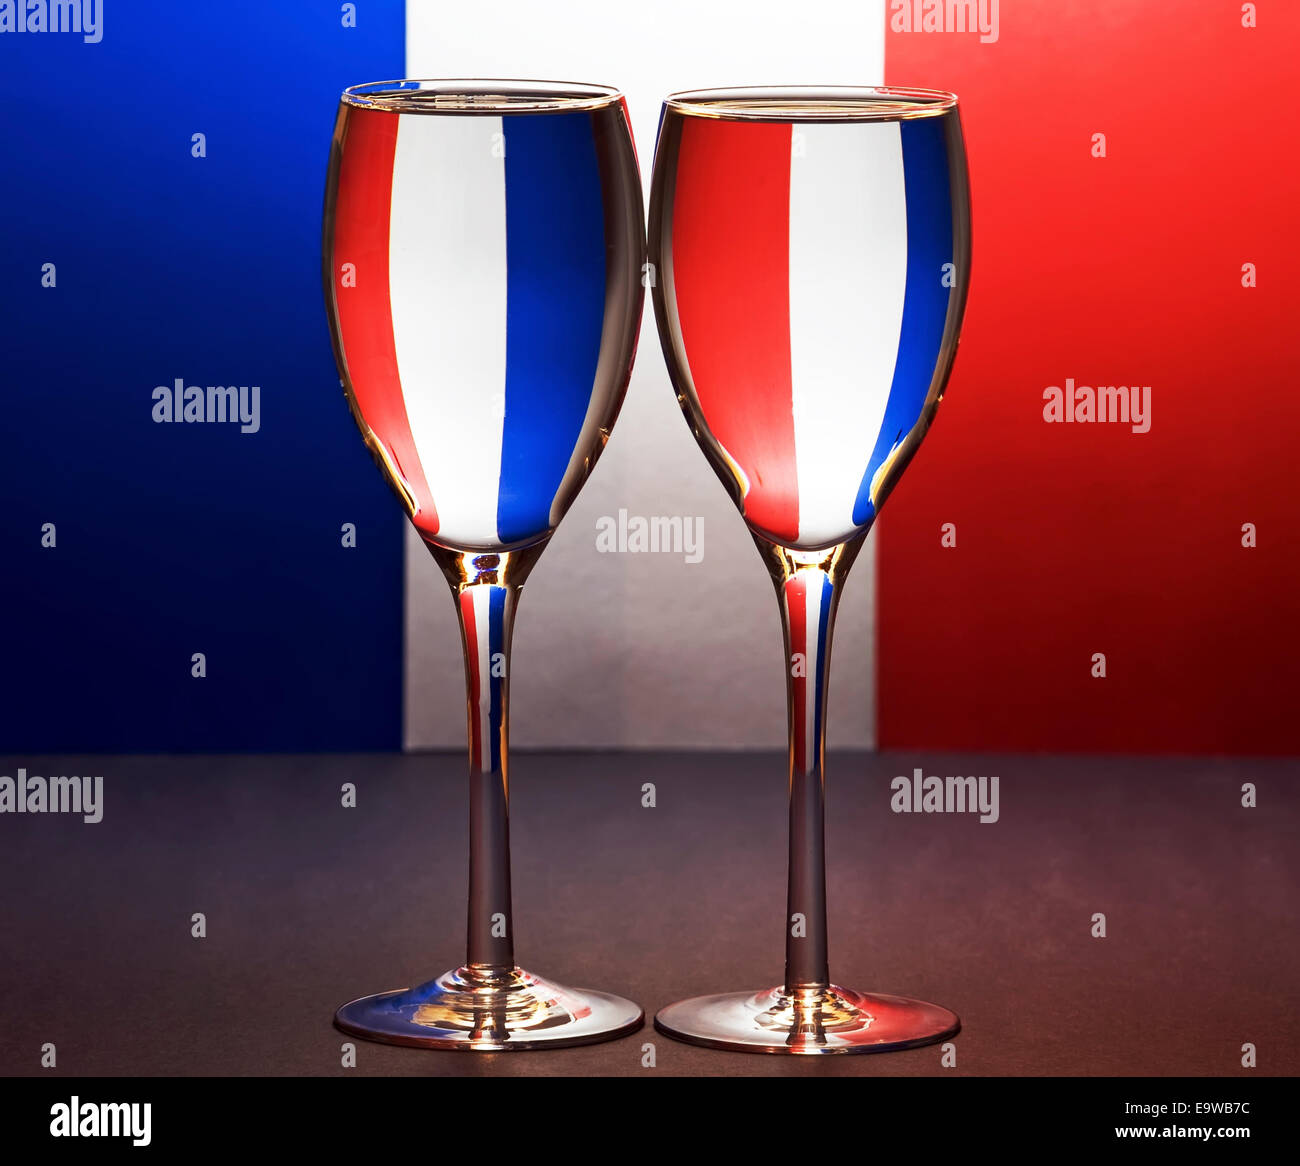 Deux verres d'eau en face d'un rouge, blanc et bleu fond ressemblant à un  drapeau français Photo Stock - Alamy